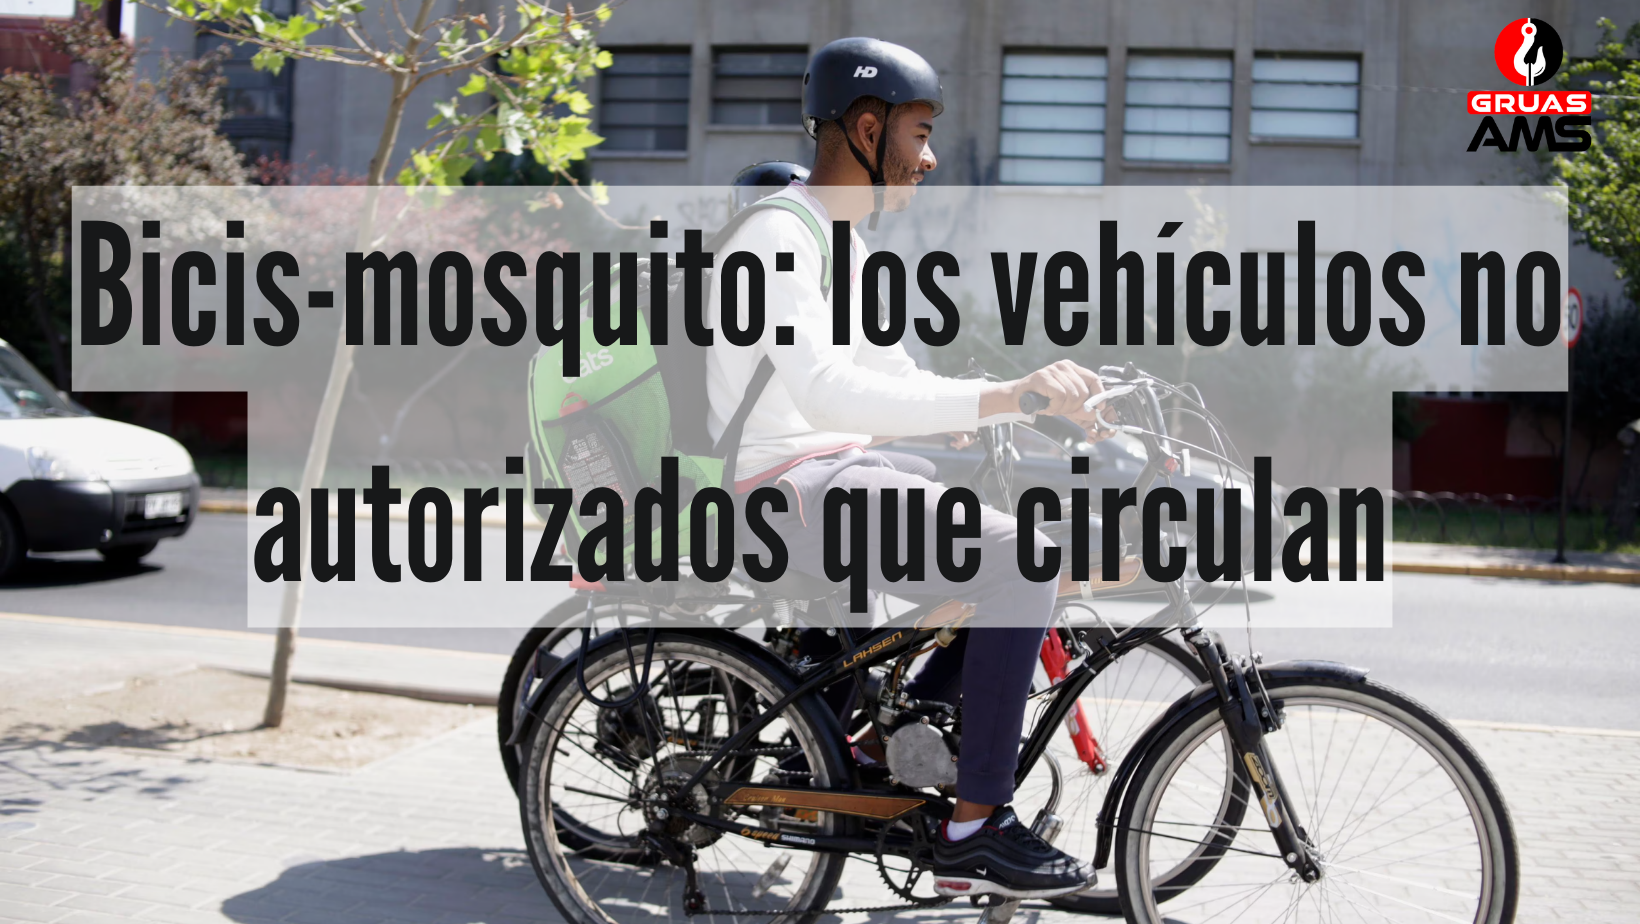 Bicis-mosquito: los vehículos no autorizados que circulan